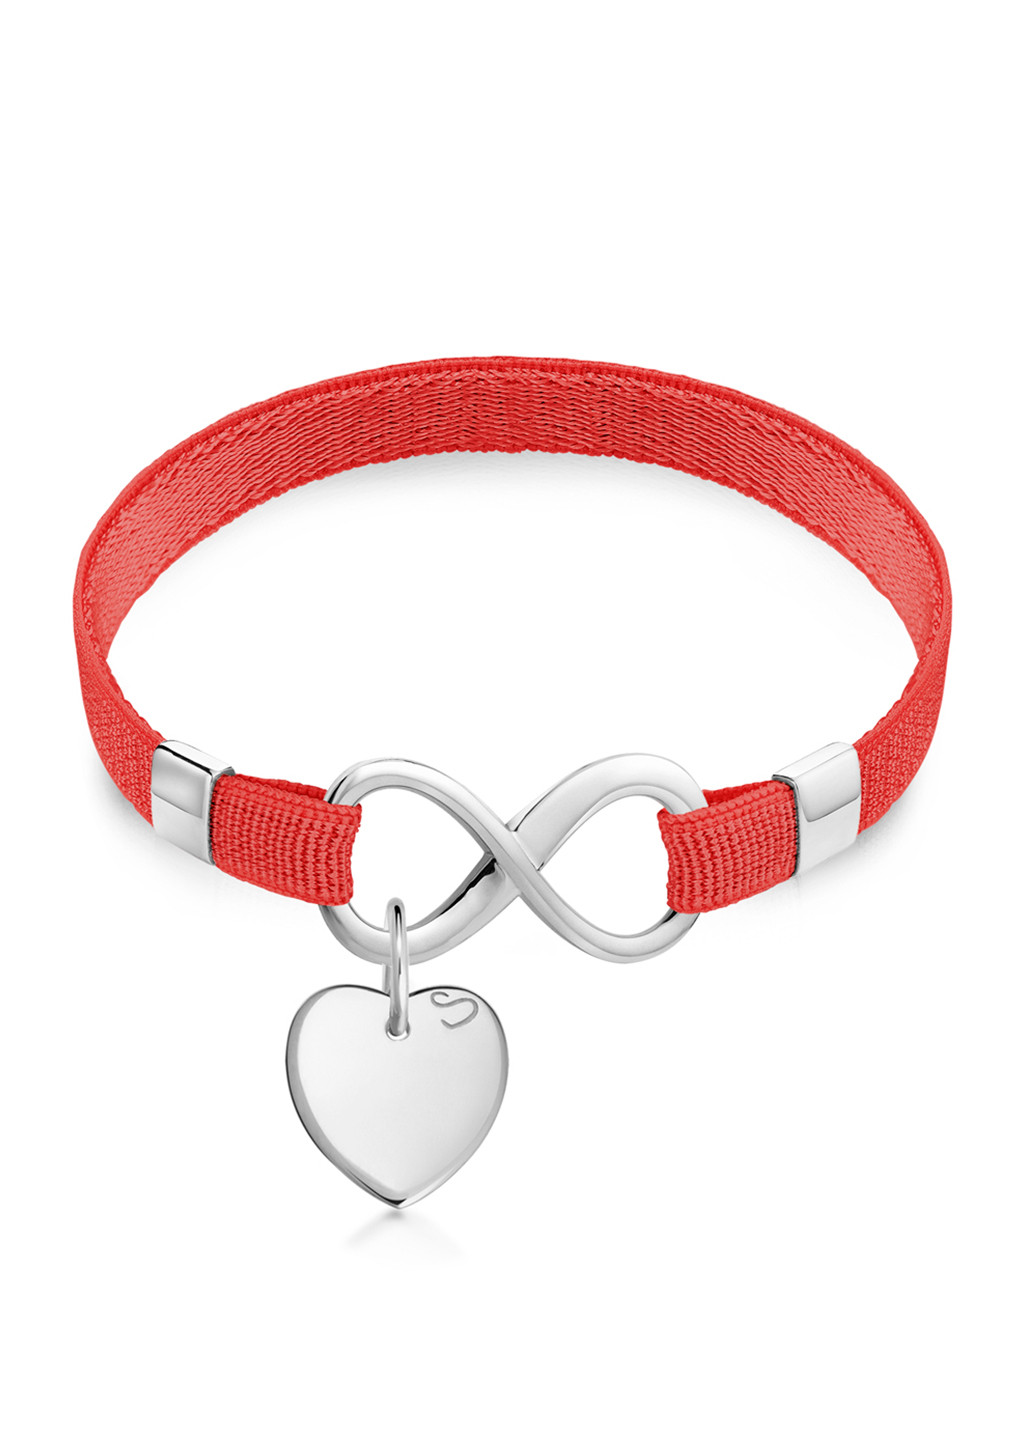 Cеребряный браслет «Polo Infinity» на ленте с подвеской «Сердце мини» 11 см Красный Peninsula (224609012)